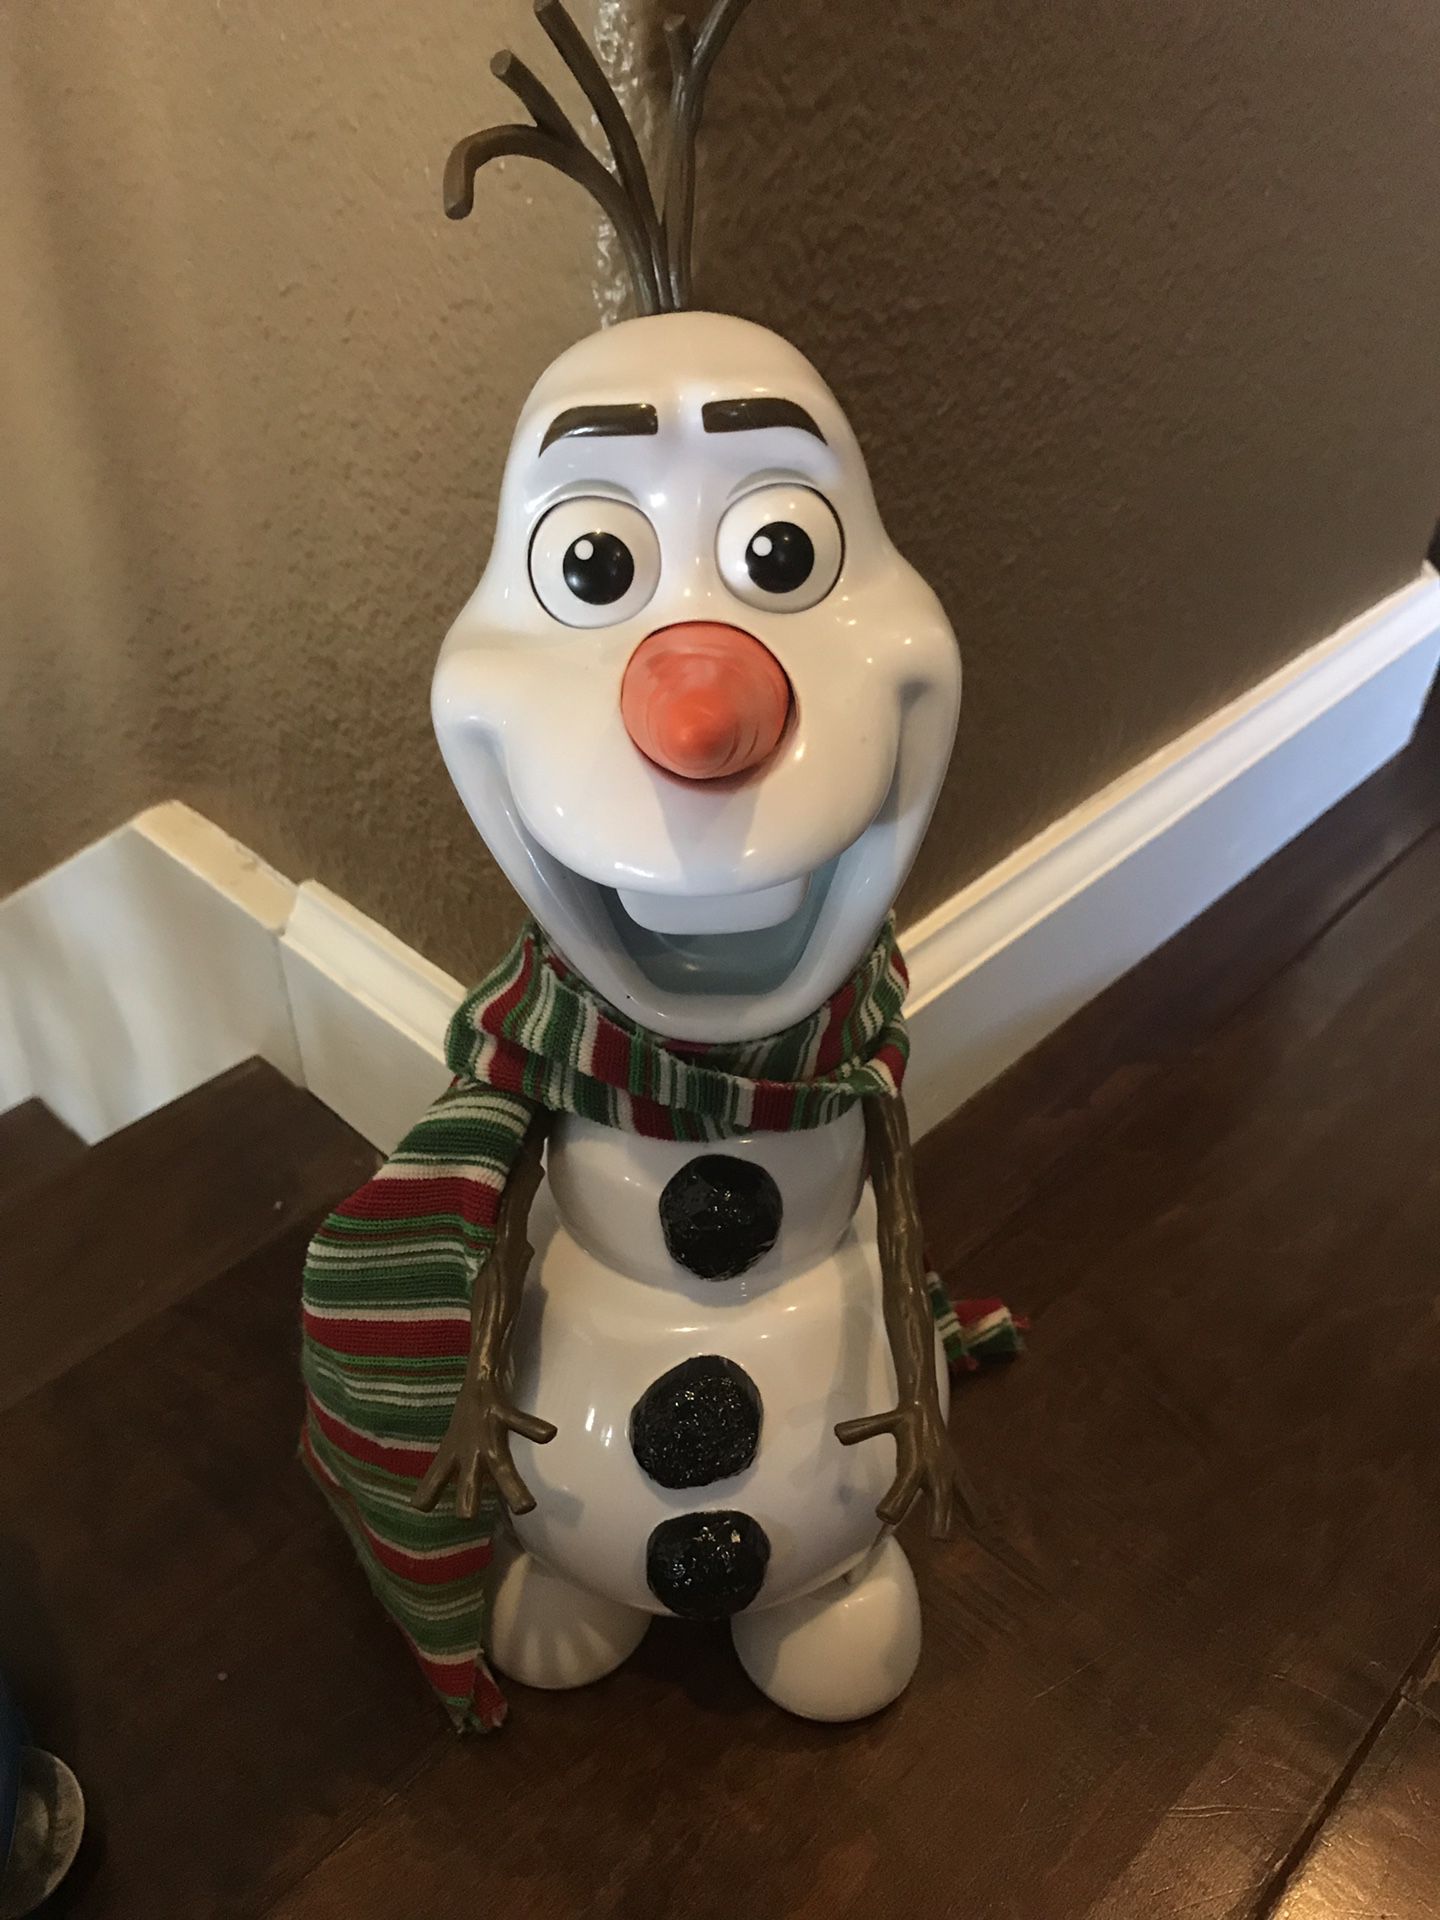 Disney Olaf Toy it talks